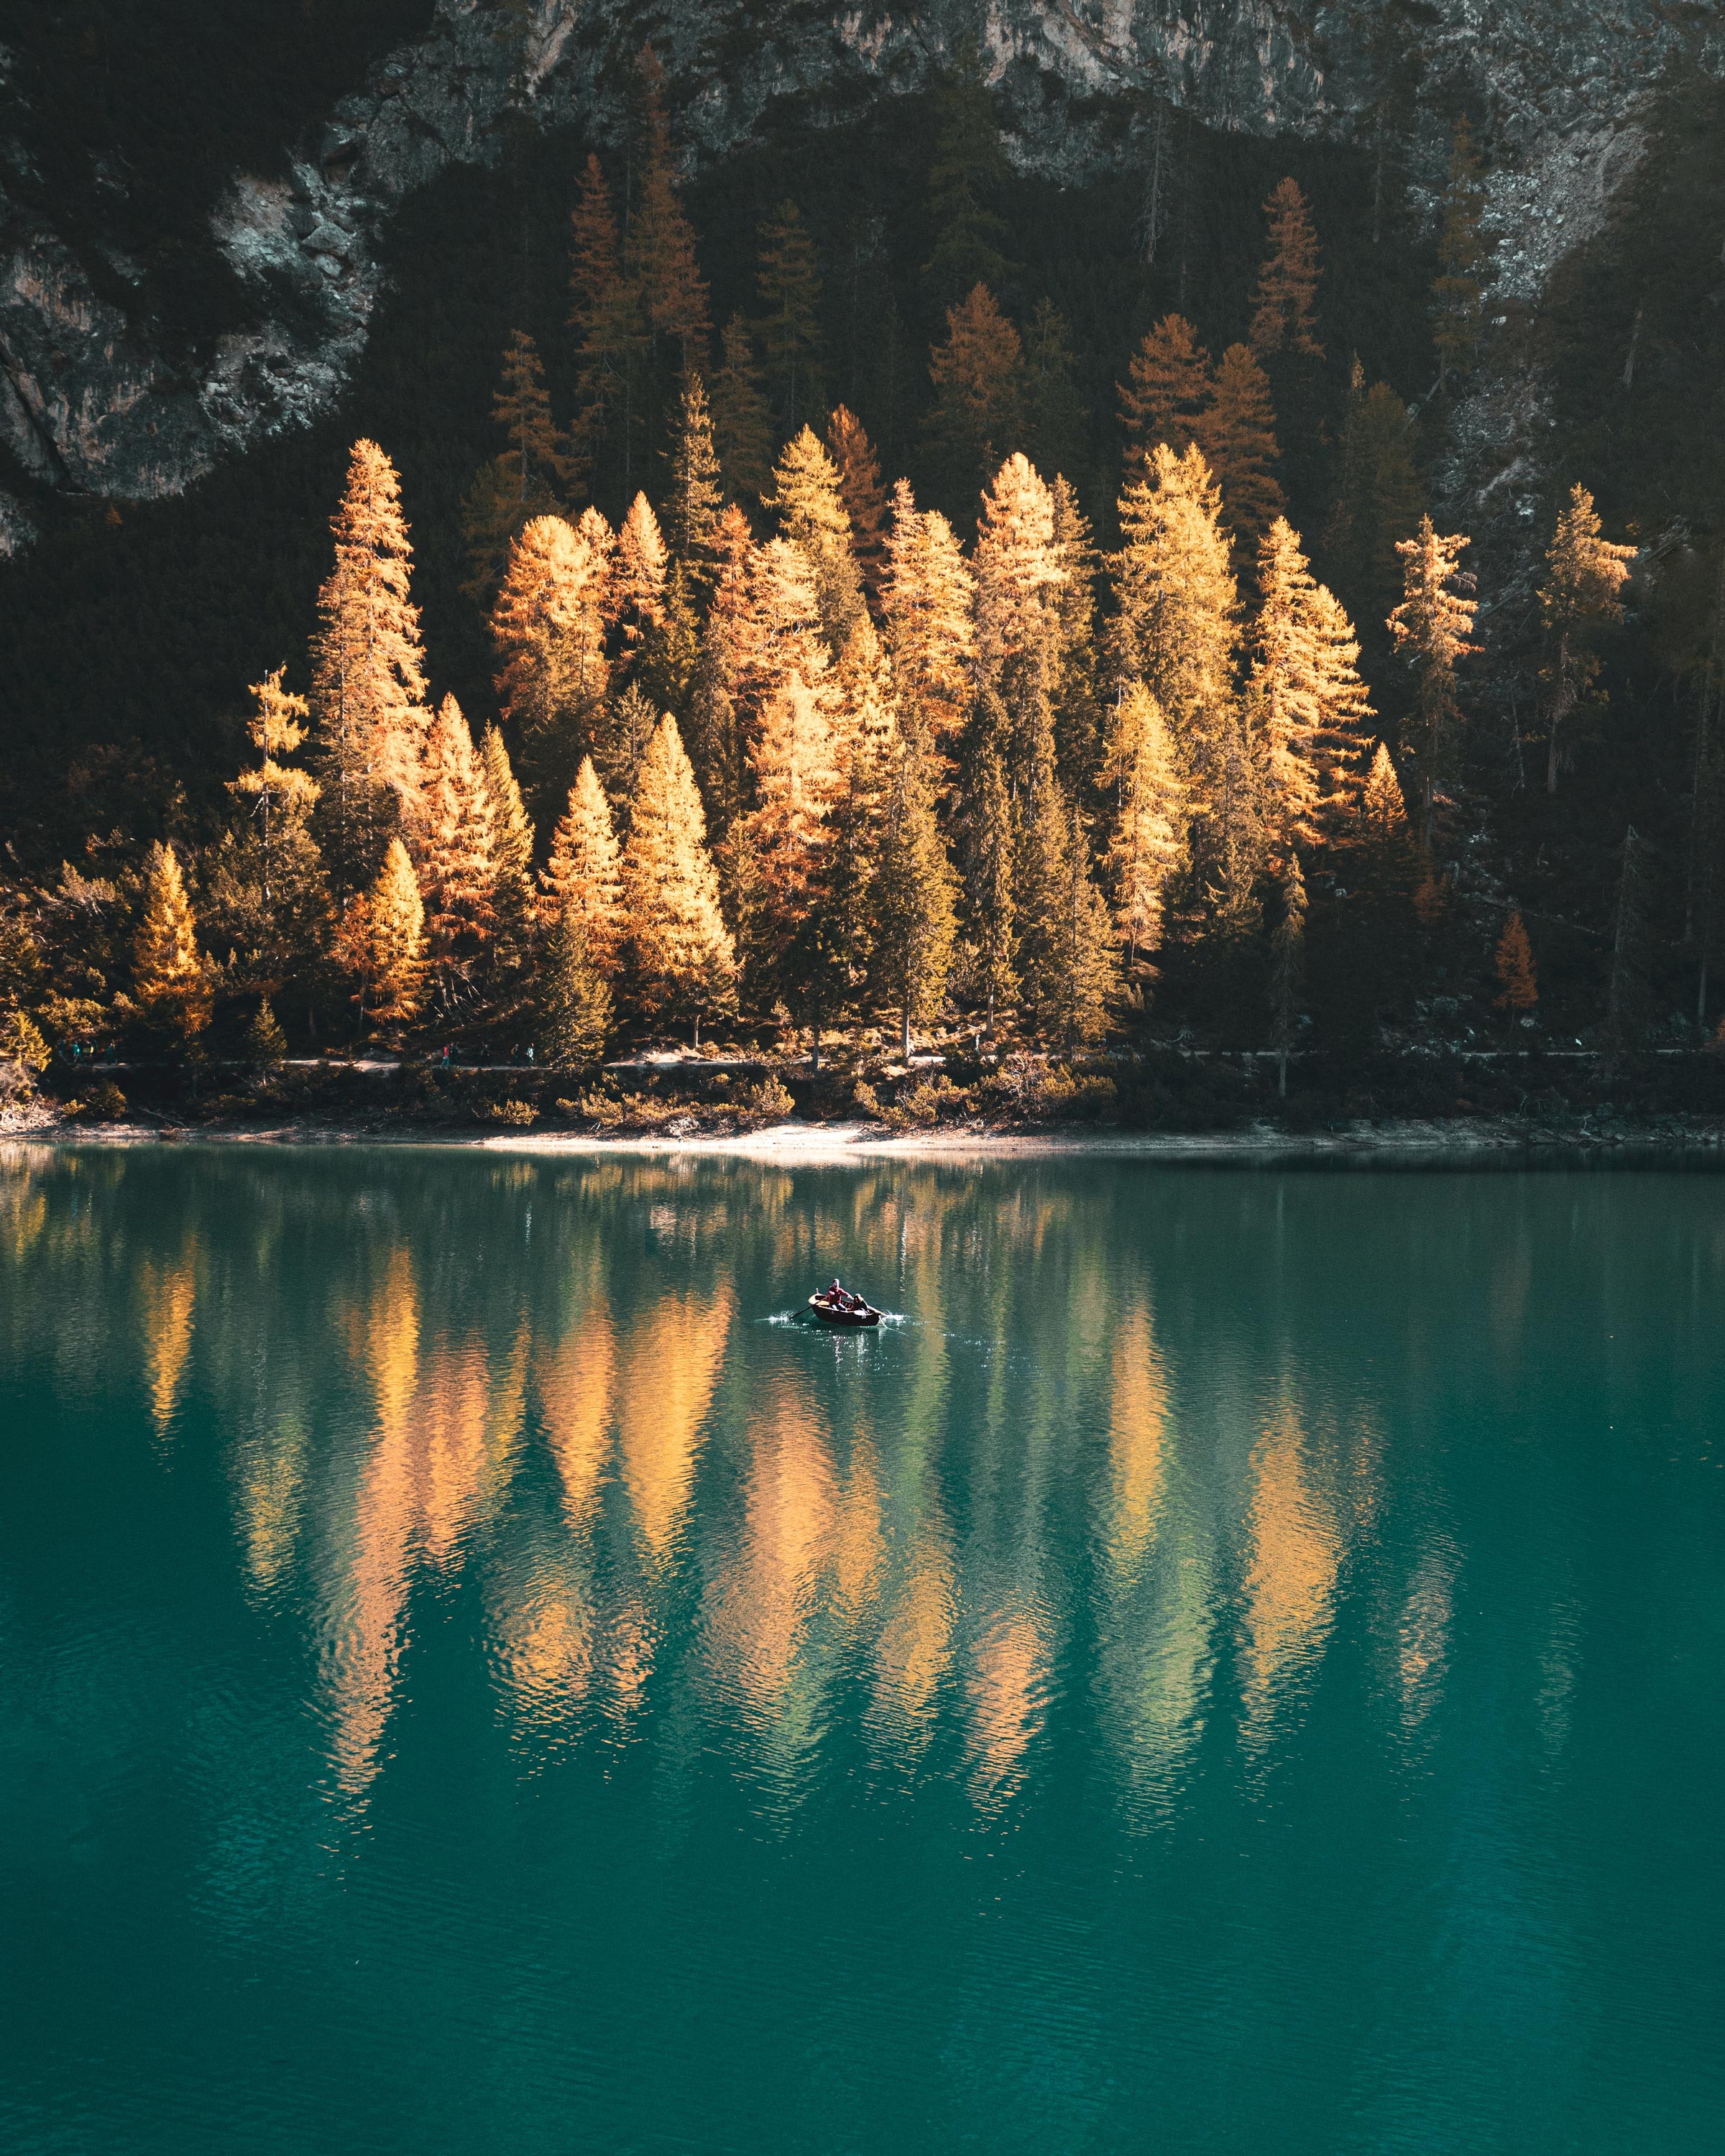 Скачать обои бесплатно Лодка, Деревья, Озеро, Природа, Пейзаж, Осень картинка на рабочий стол ПК